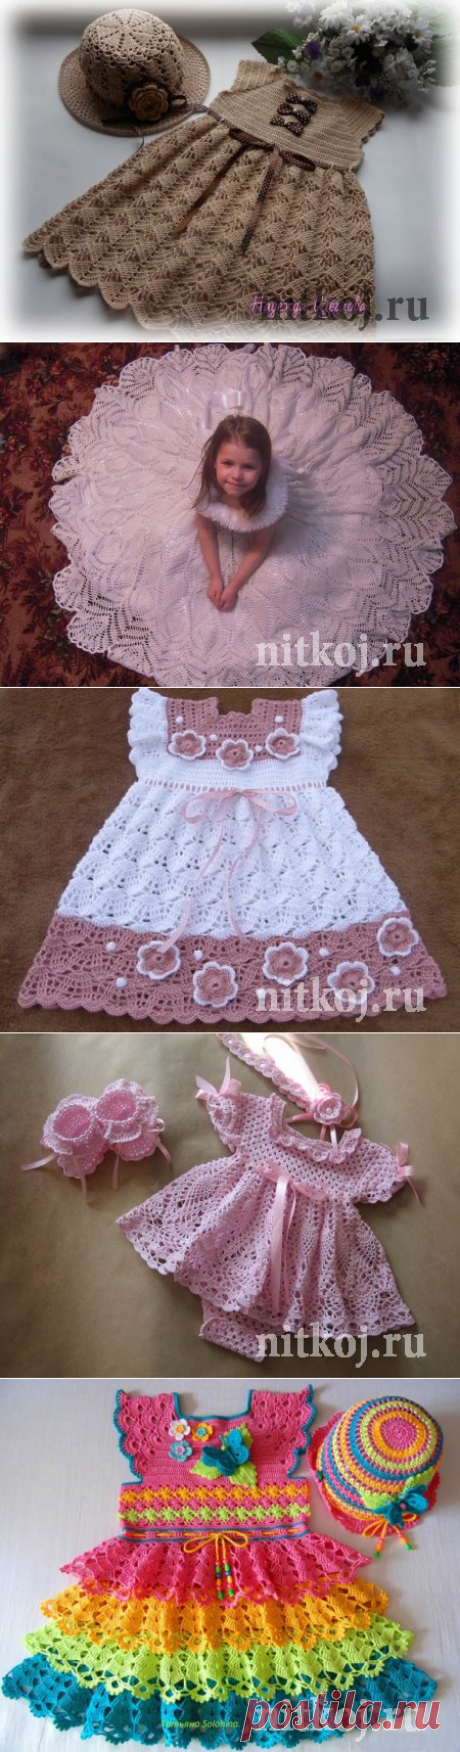 Платье, сарафанчики » Ниткой - вязаные вещи для вашего дома, вязание крючком, вязание спицами, схемы вязания